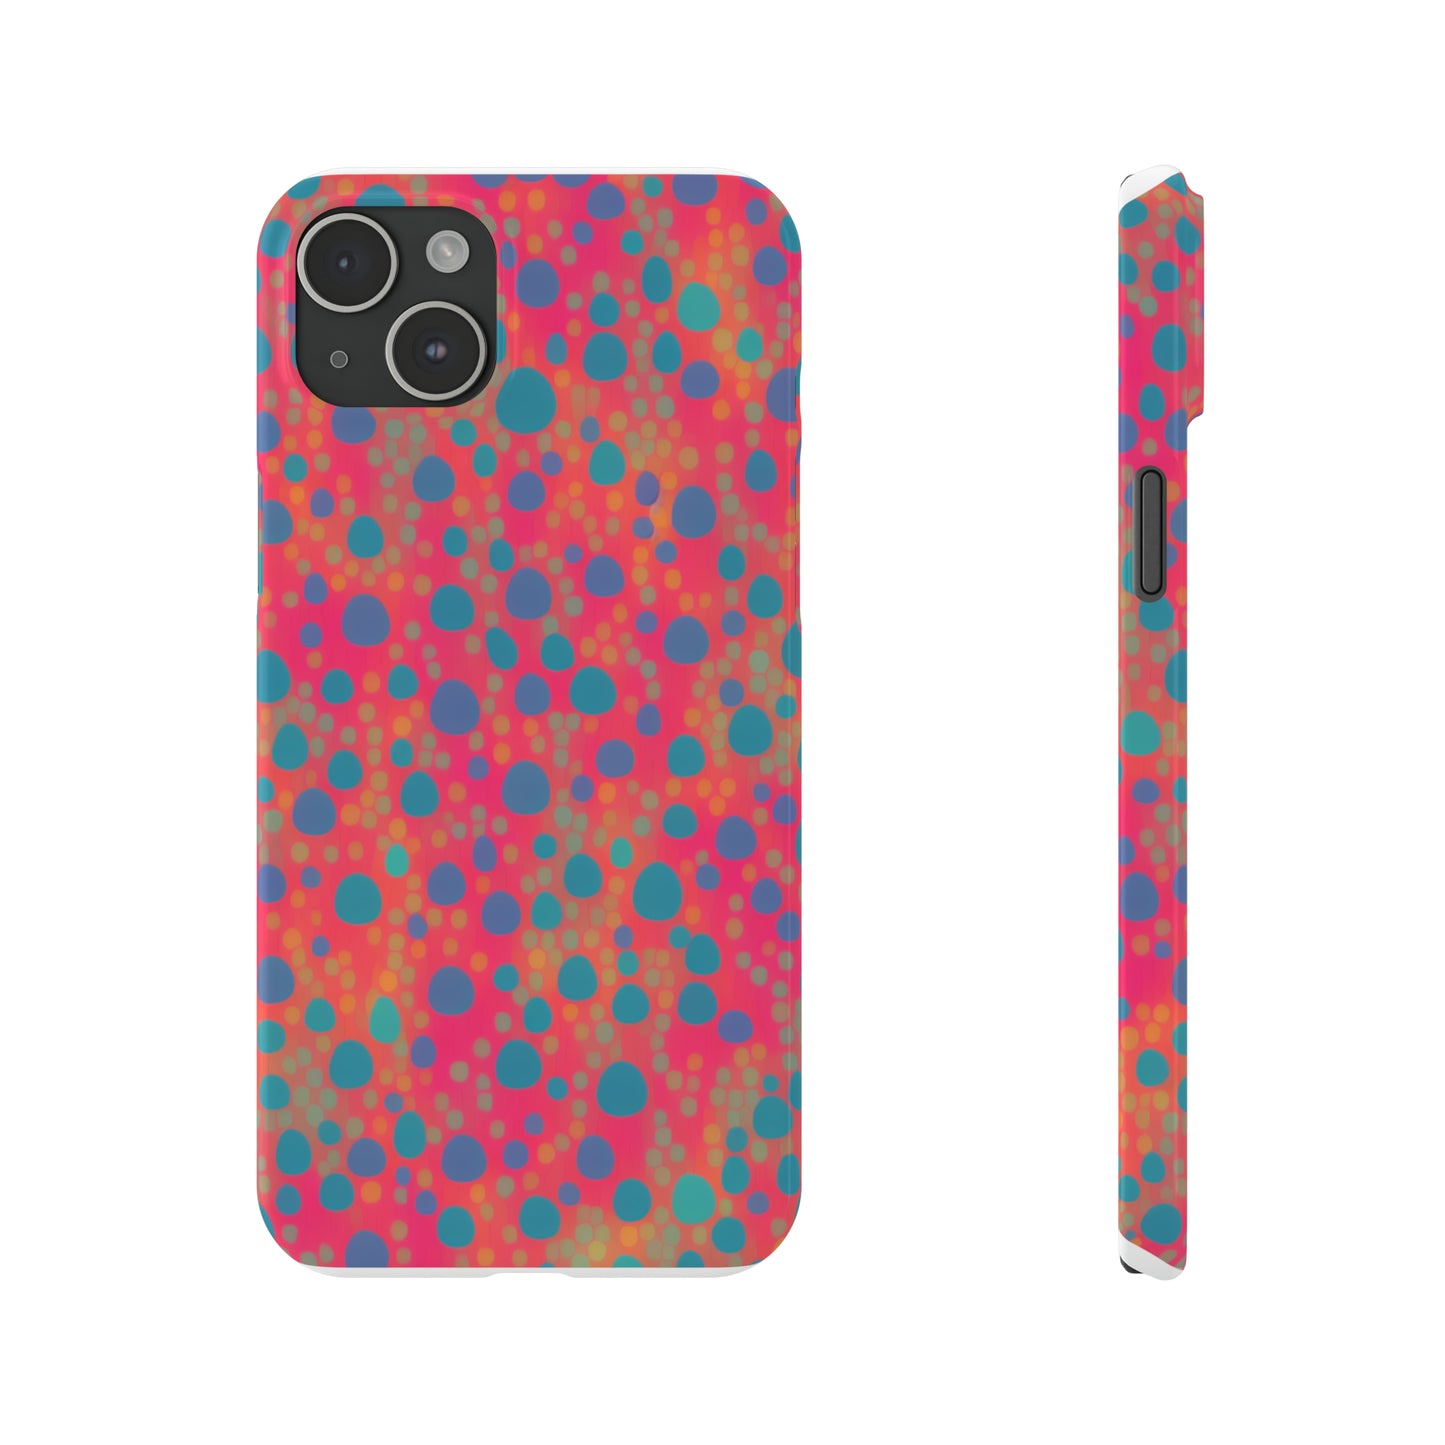 Slim Pink Phone Case - Premium Slim Phone Case for iPhone & Samsung